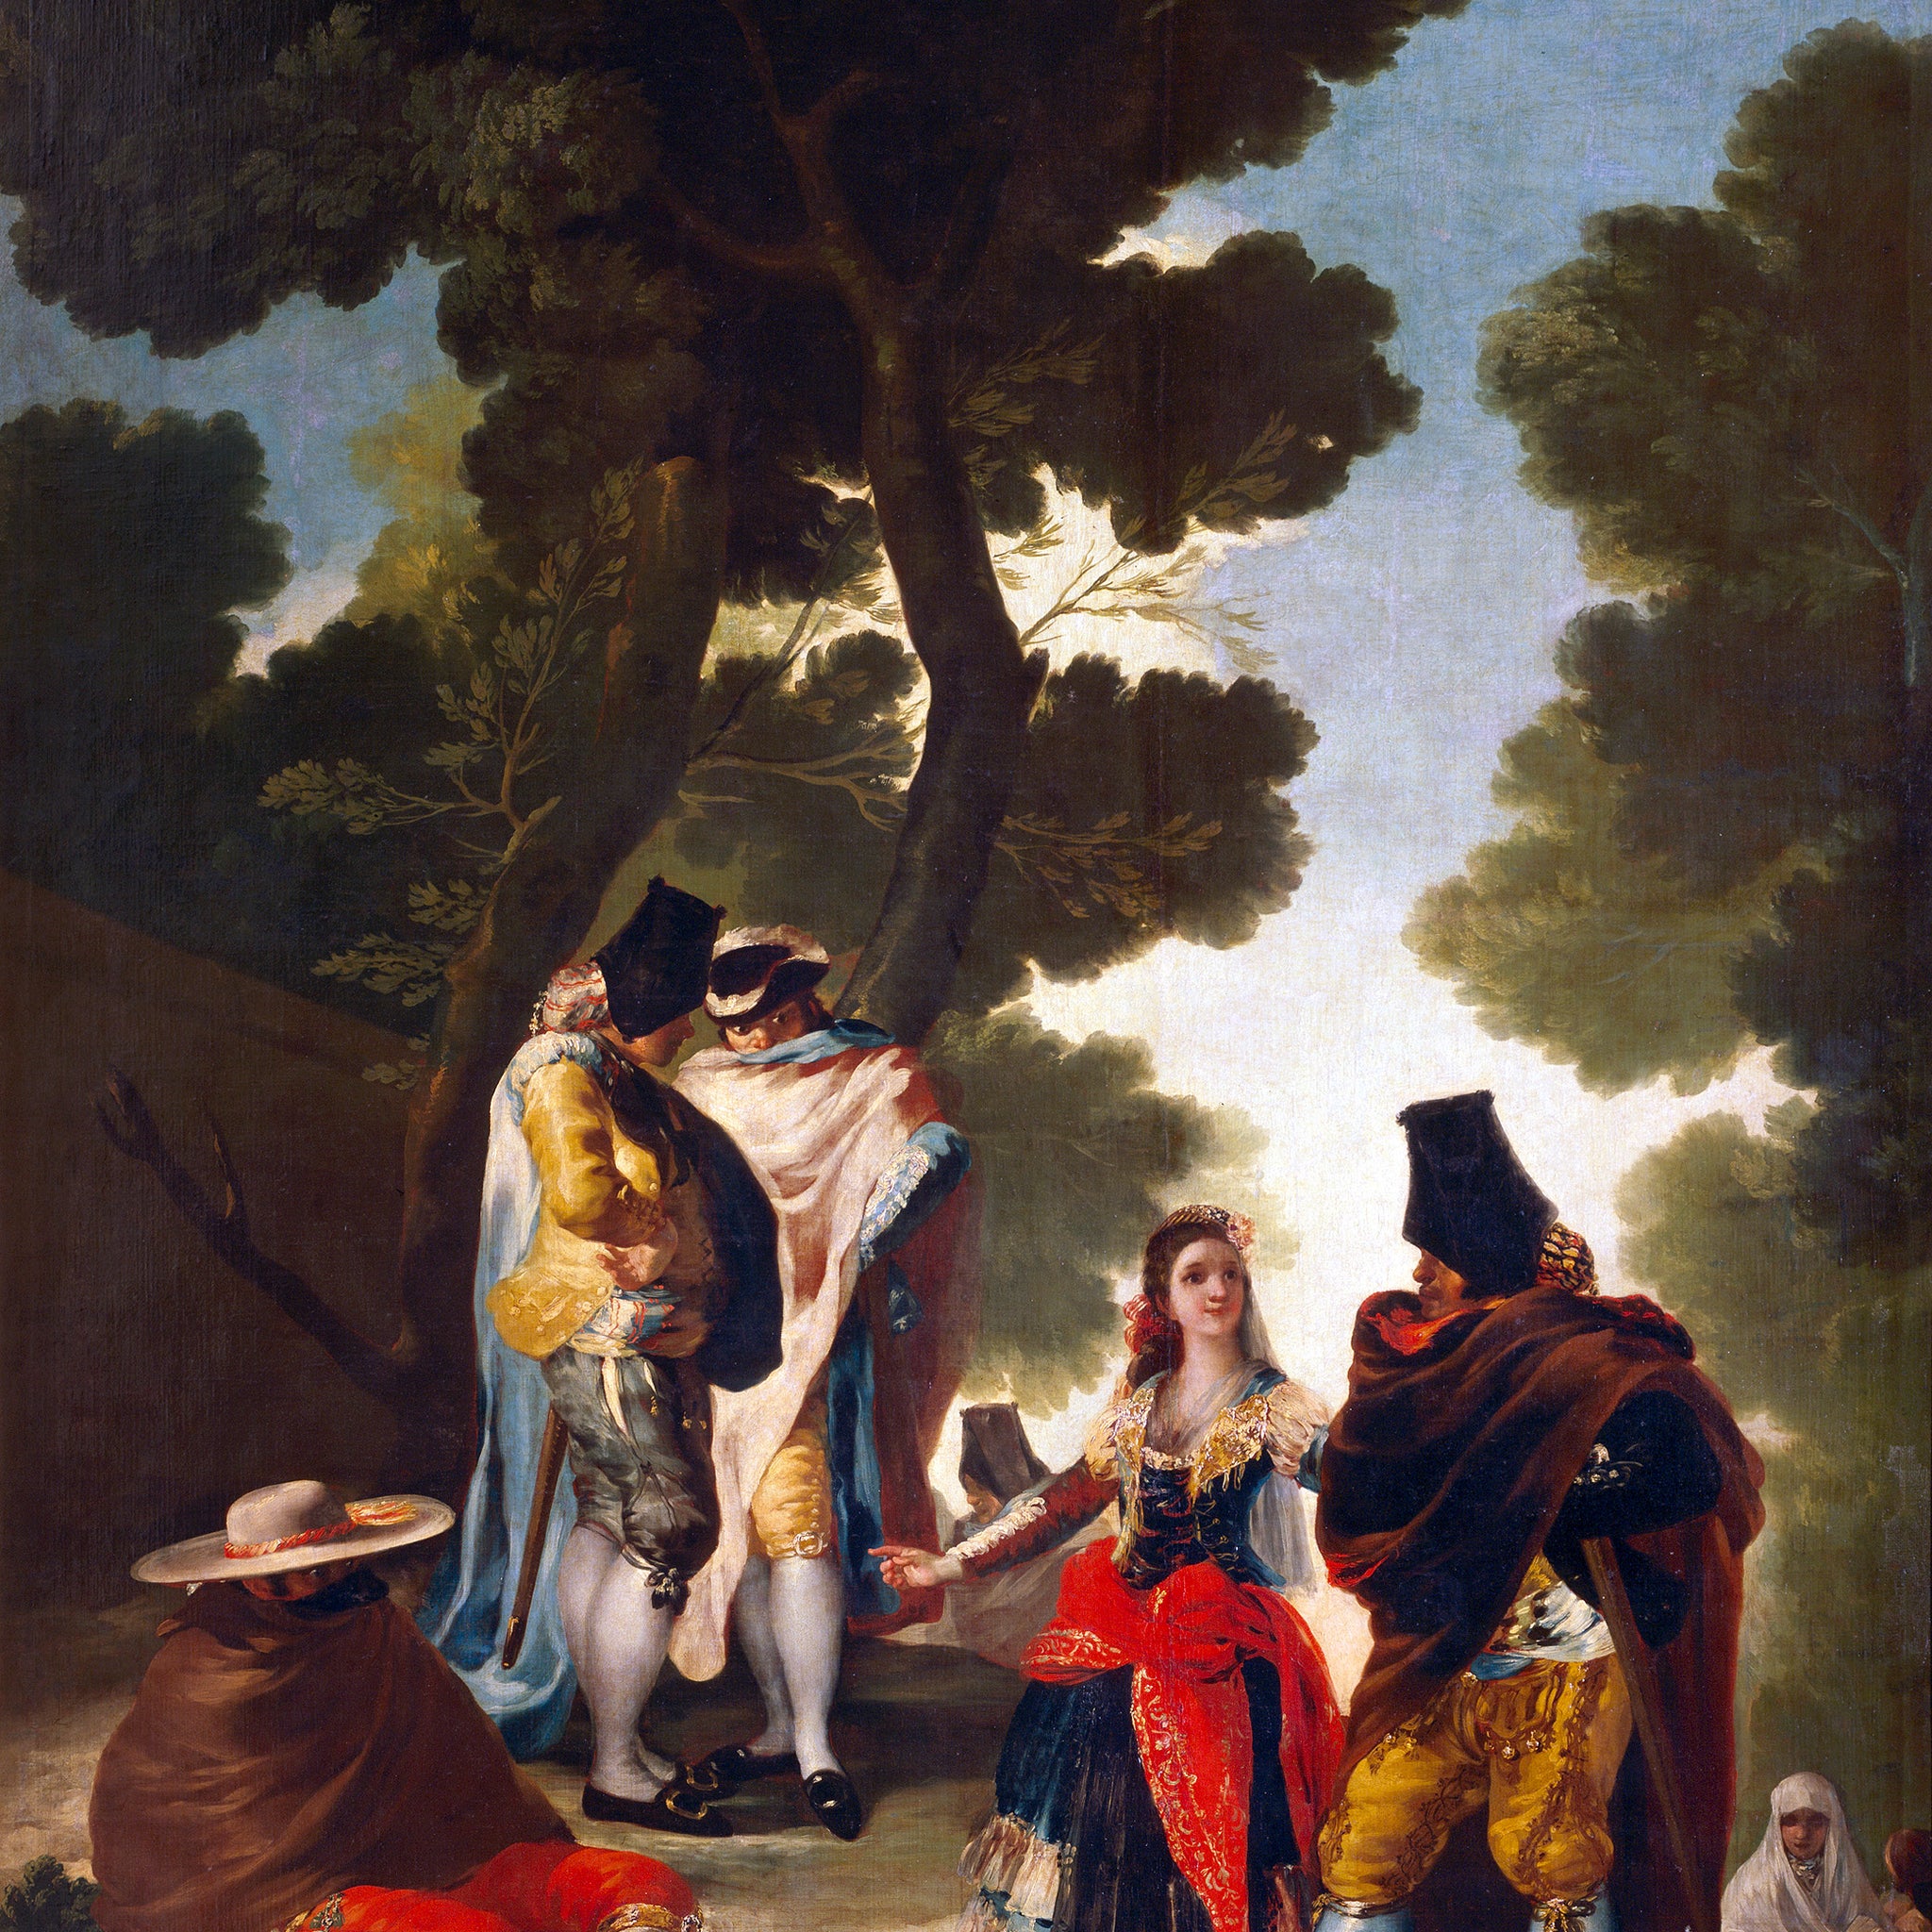 La Maja et les embozados - Francisco de Goya